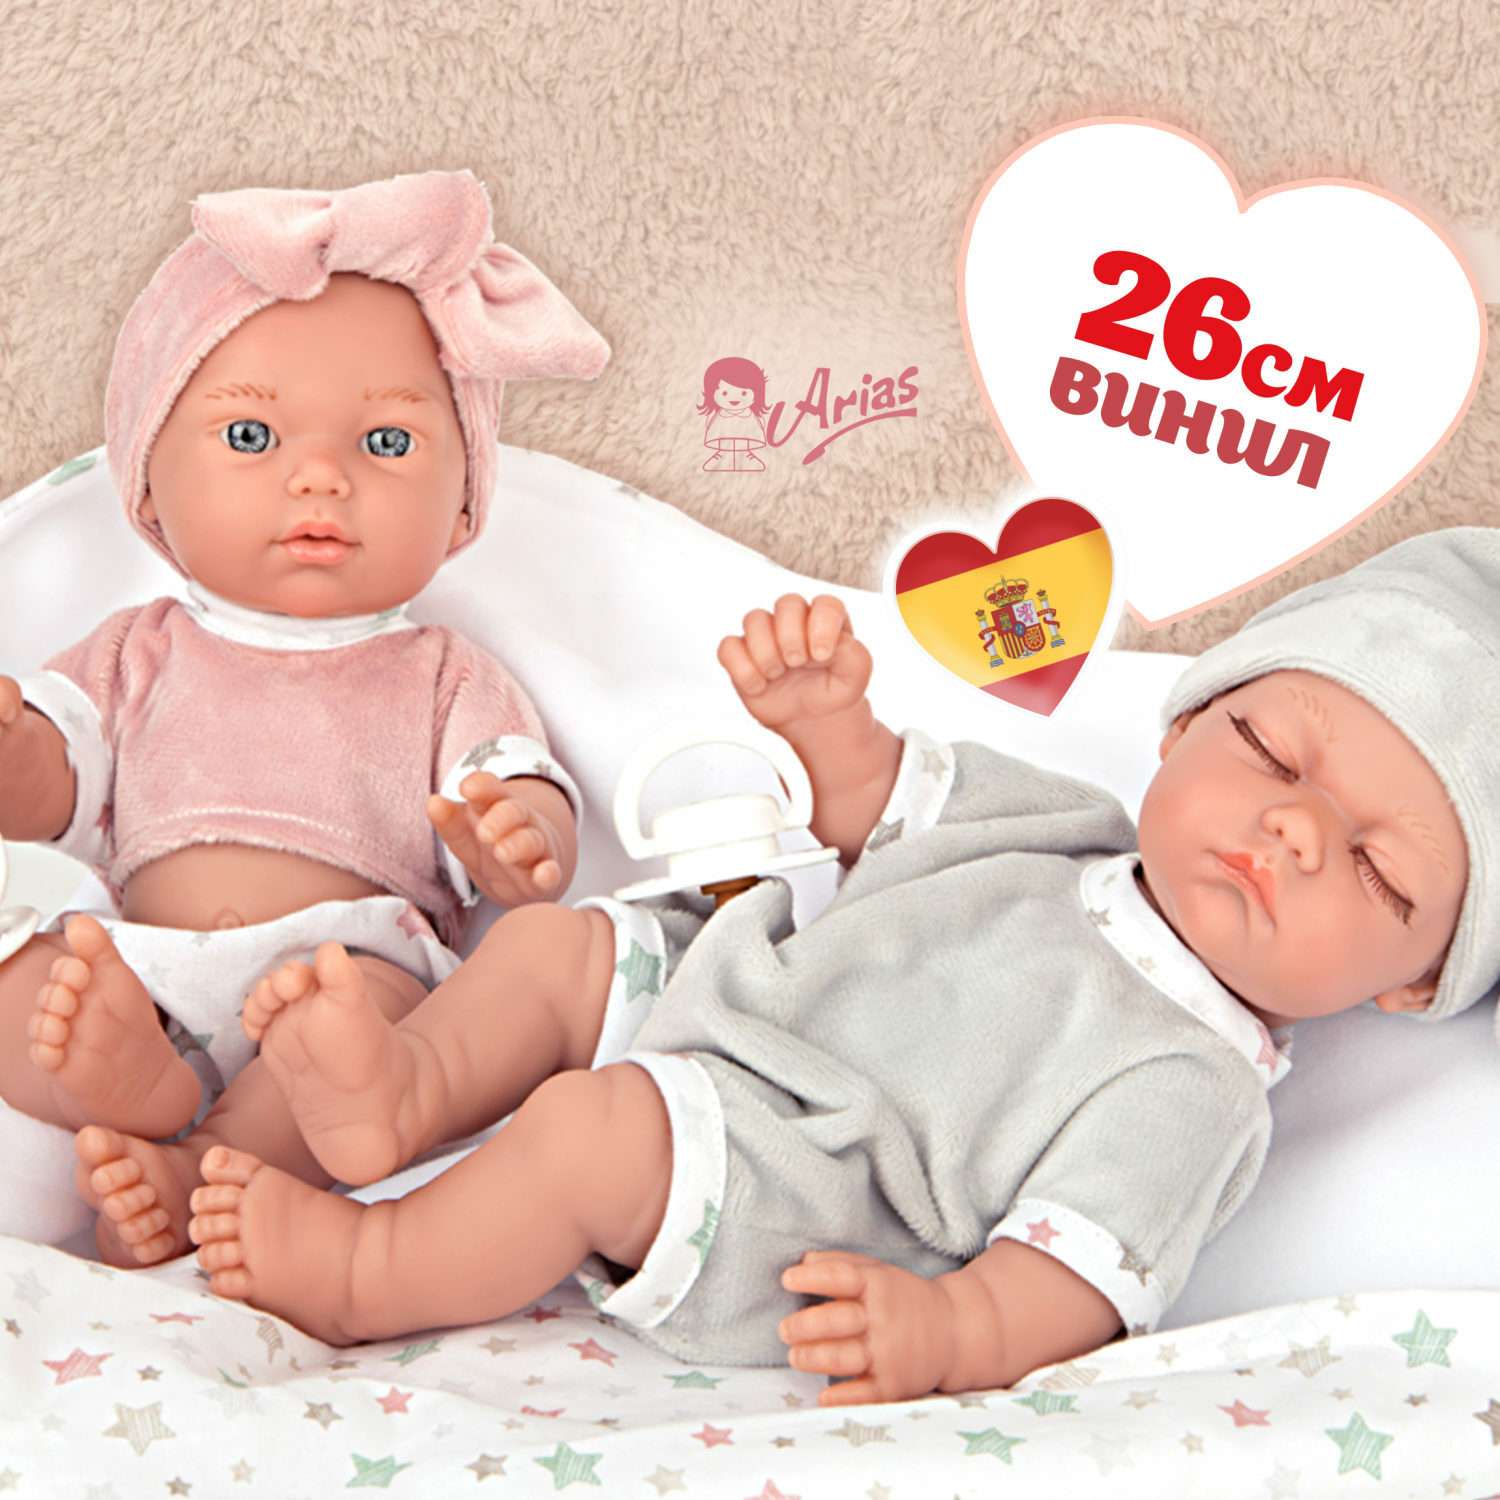 Кукла Arias elegance реборн близнецы с одеждой и одеялом 2 шт 26 см Т24469 - фото 1